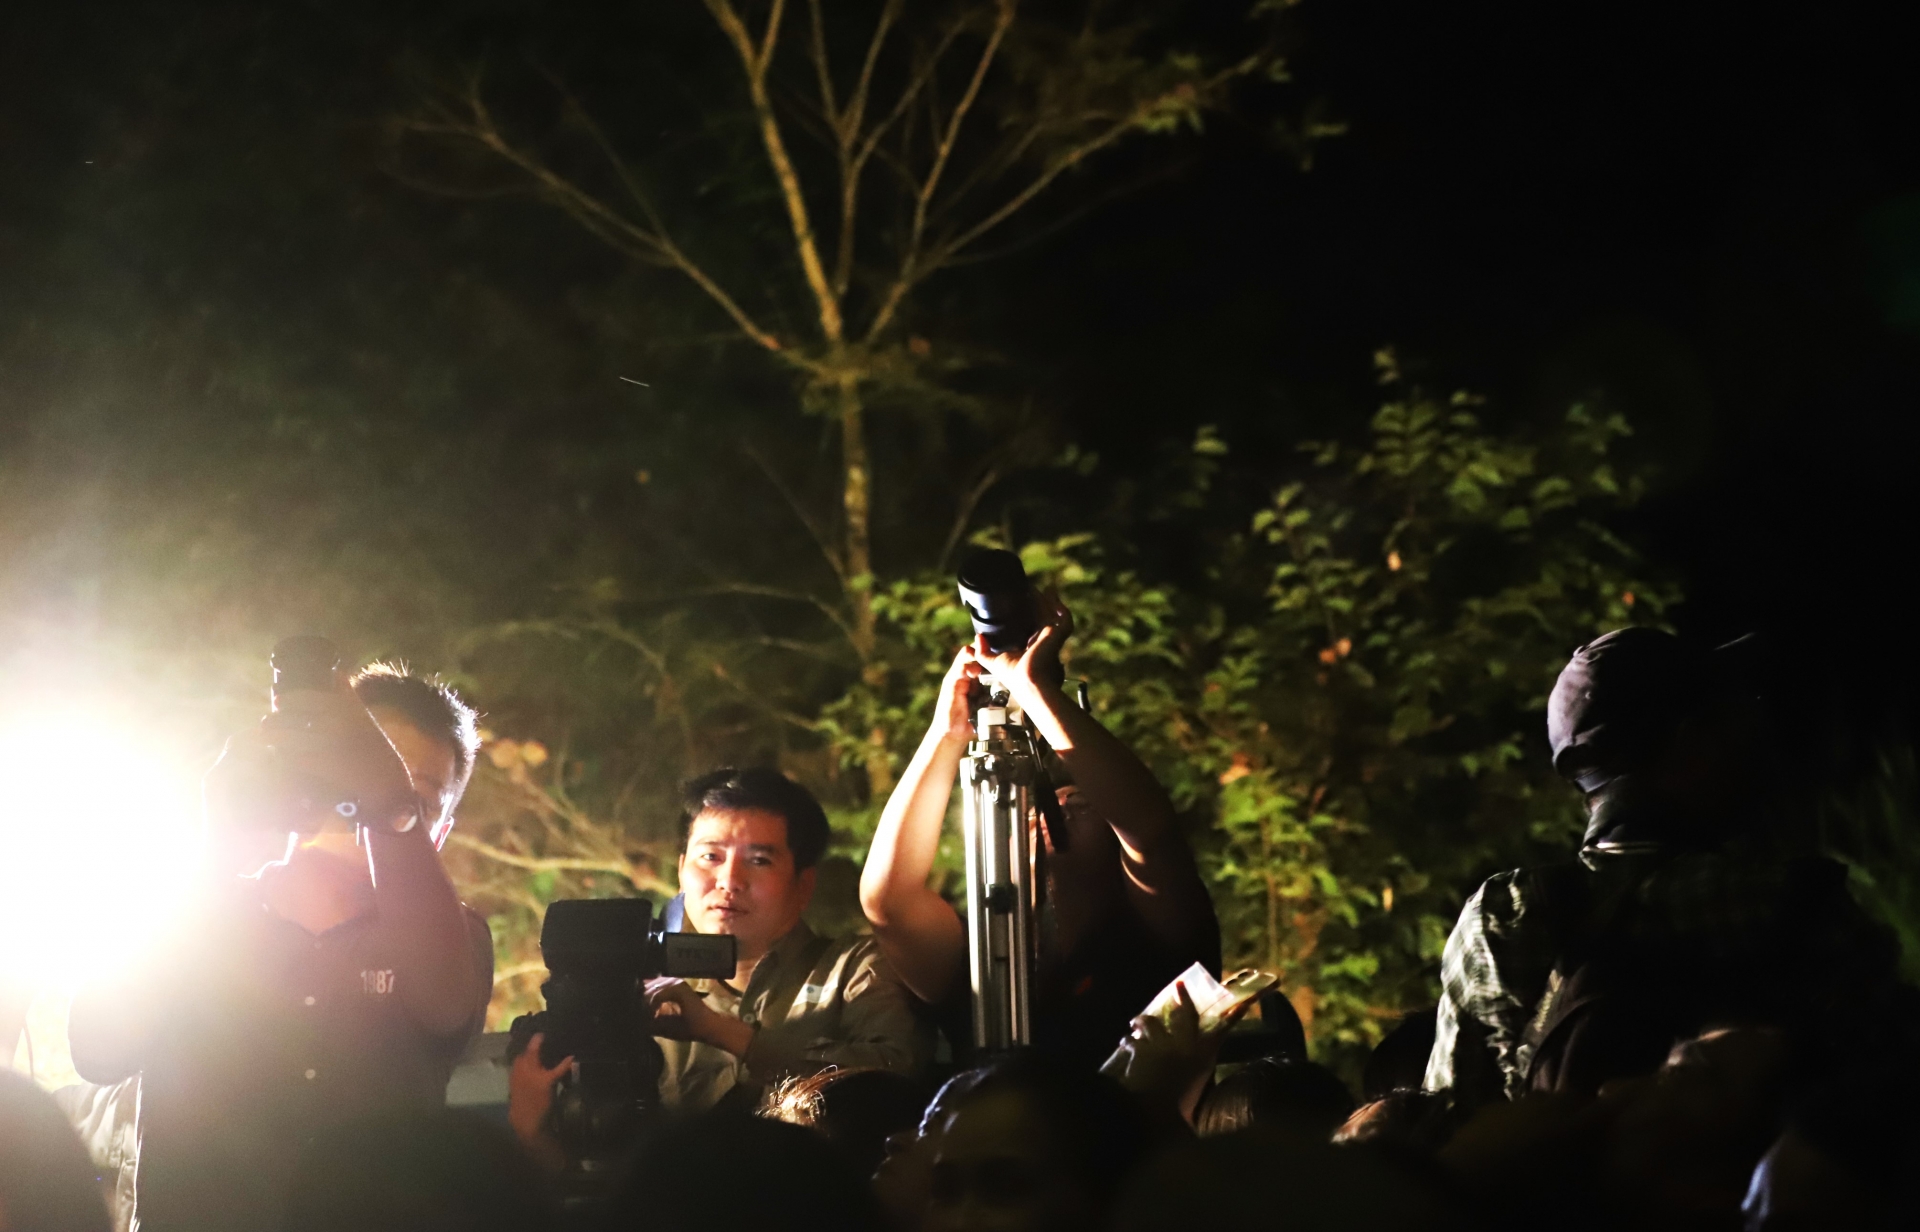 Các phong viên, nhà báo trên khắp cả nước cùng săn ảnh khi ngắm thú rừng tại VQG Cát Tiên vào ban đêm